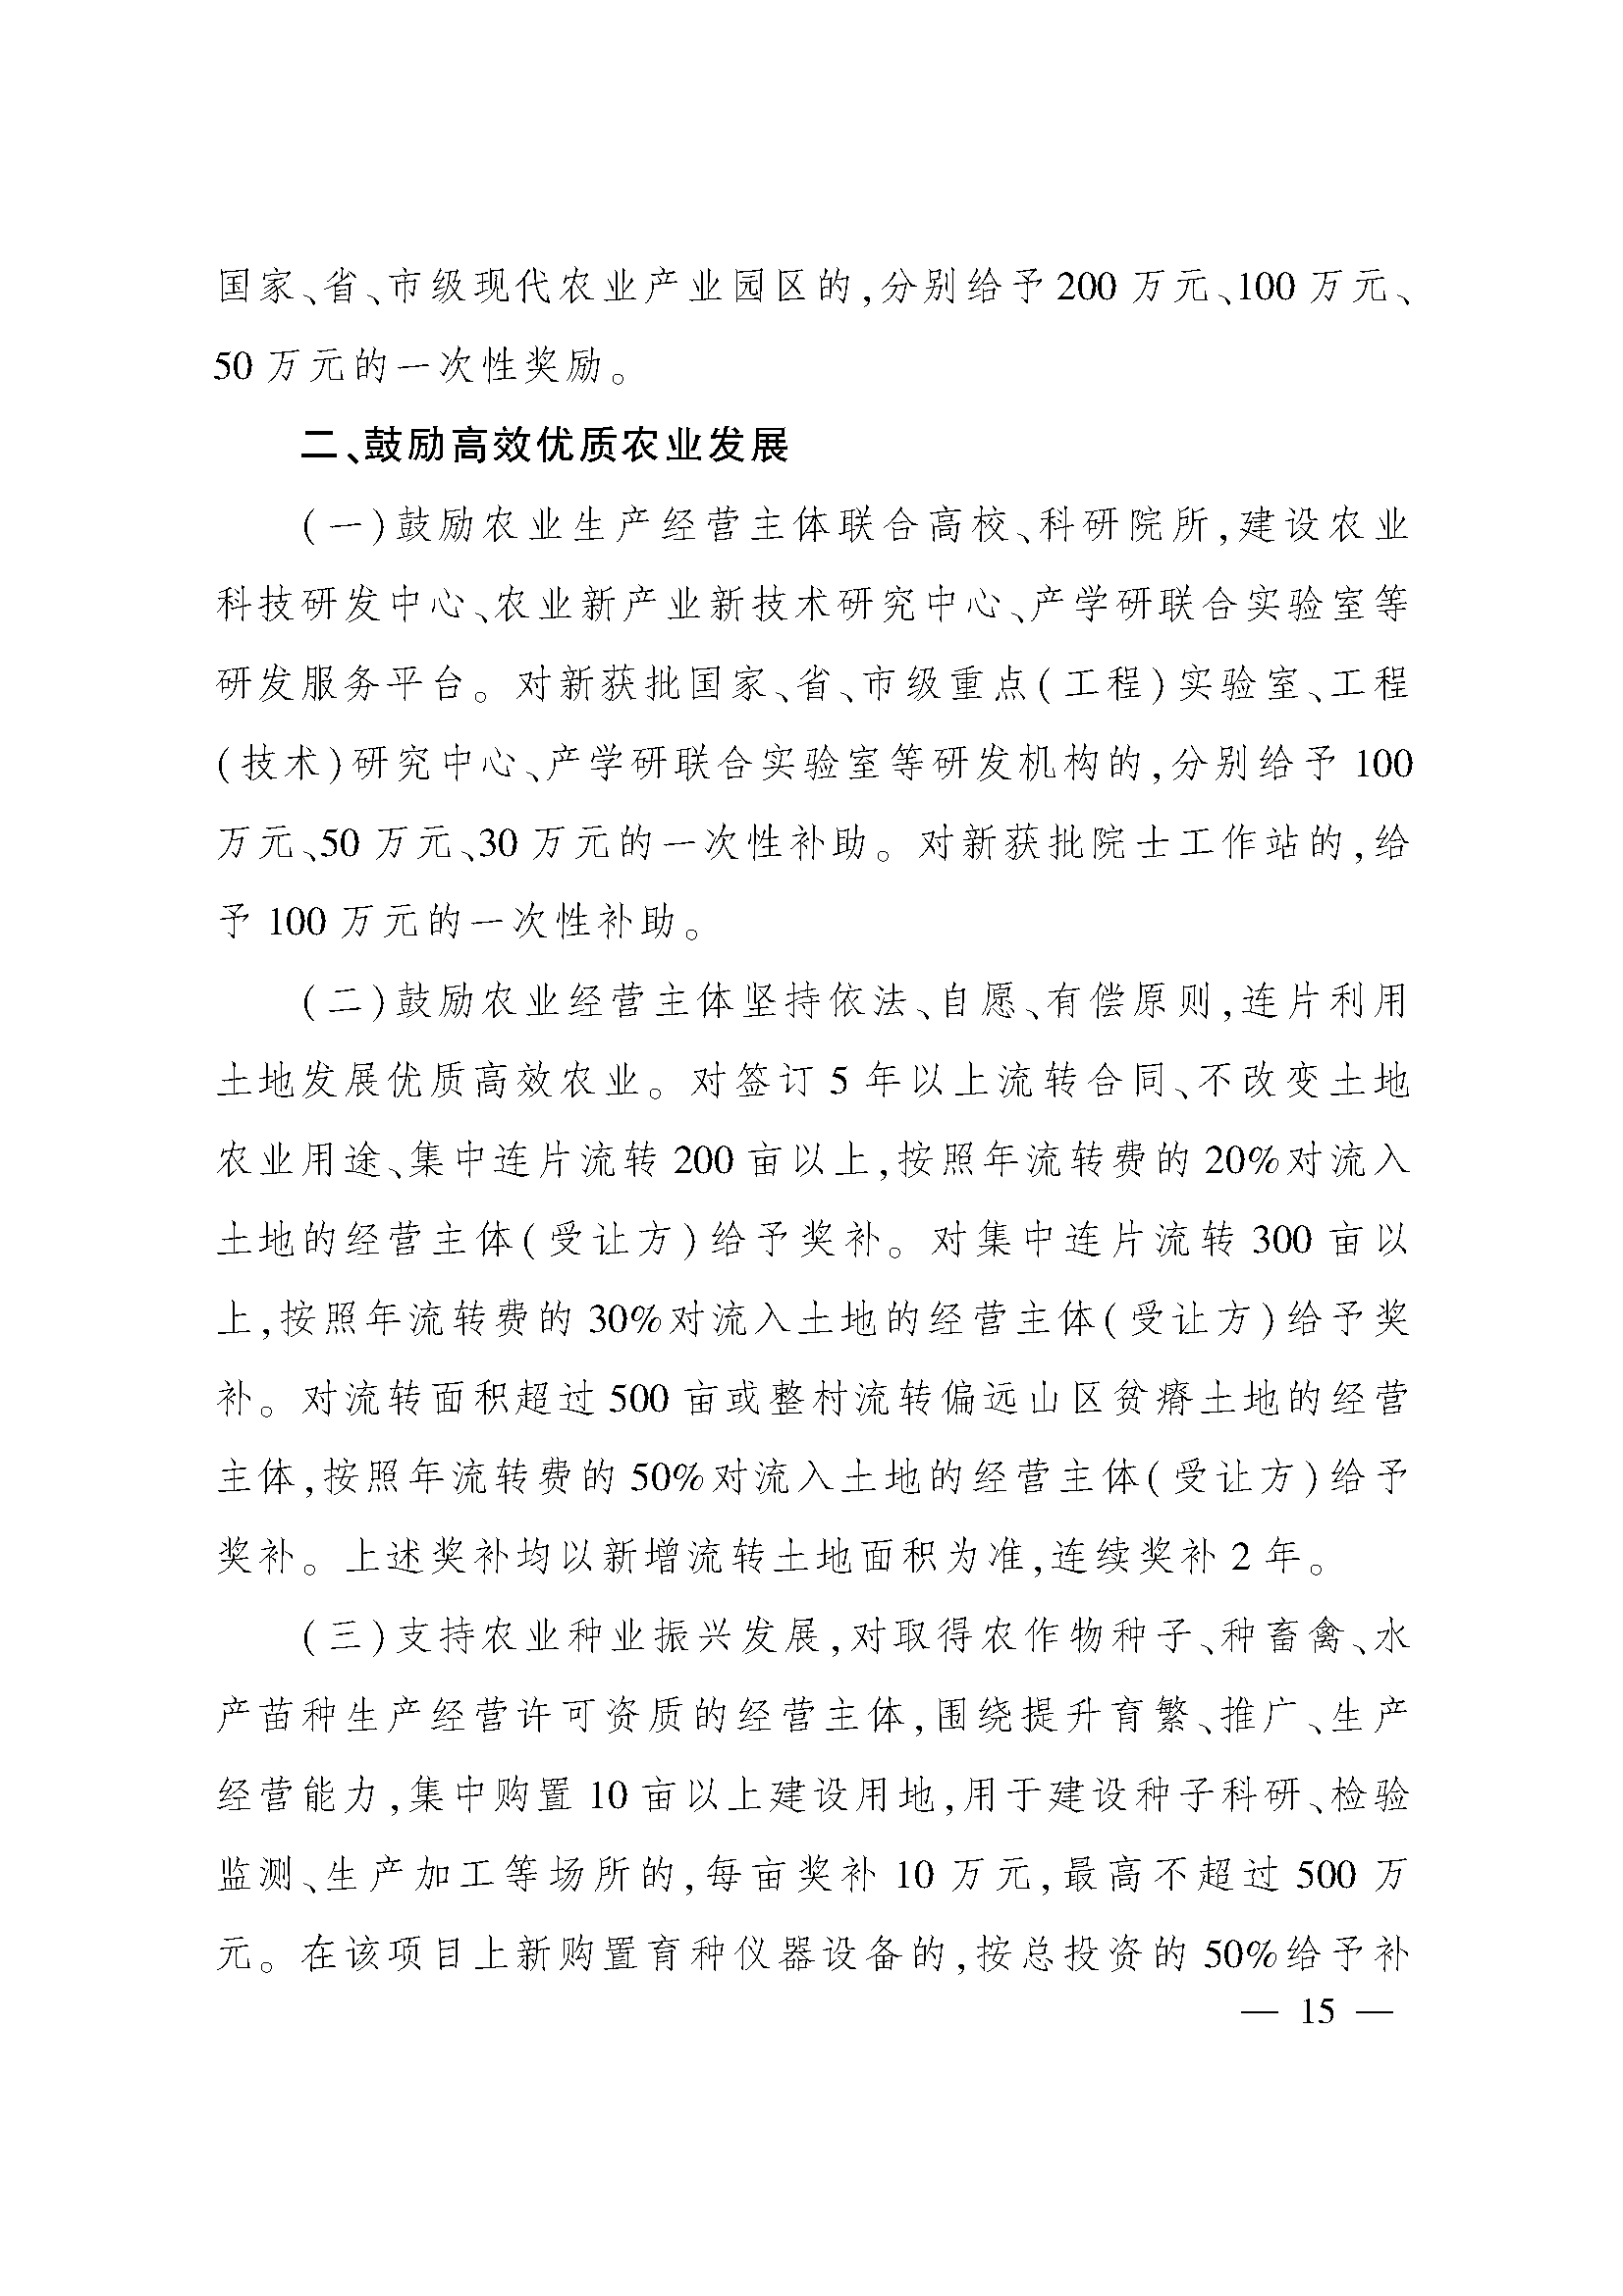 太原市人民政府办公室关于印发太原市招商引资若干措施的通知(图15)